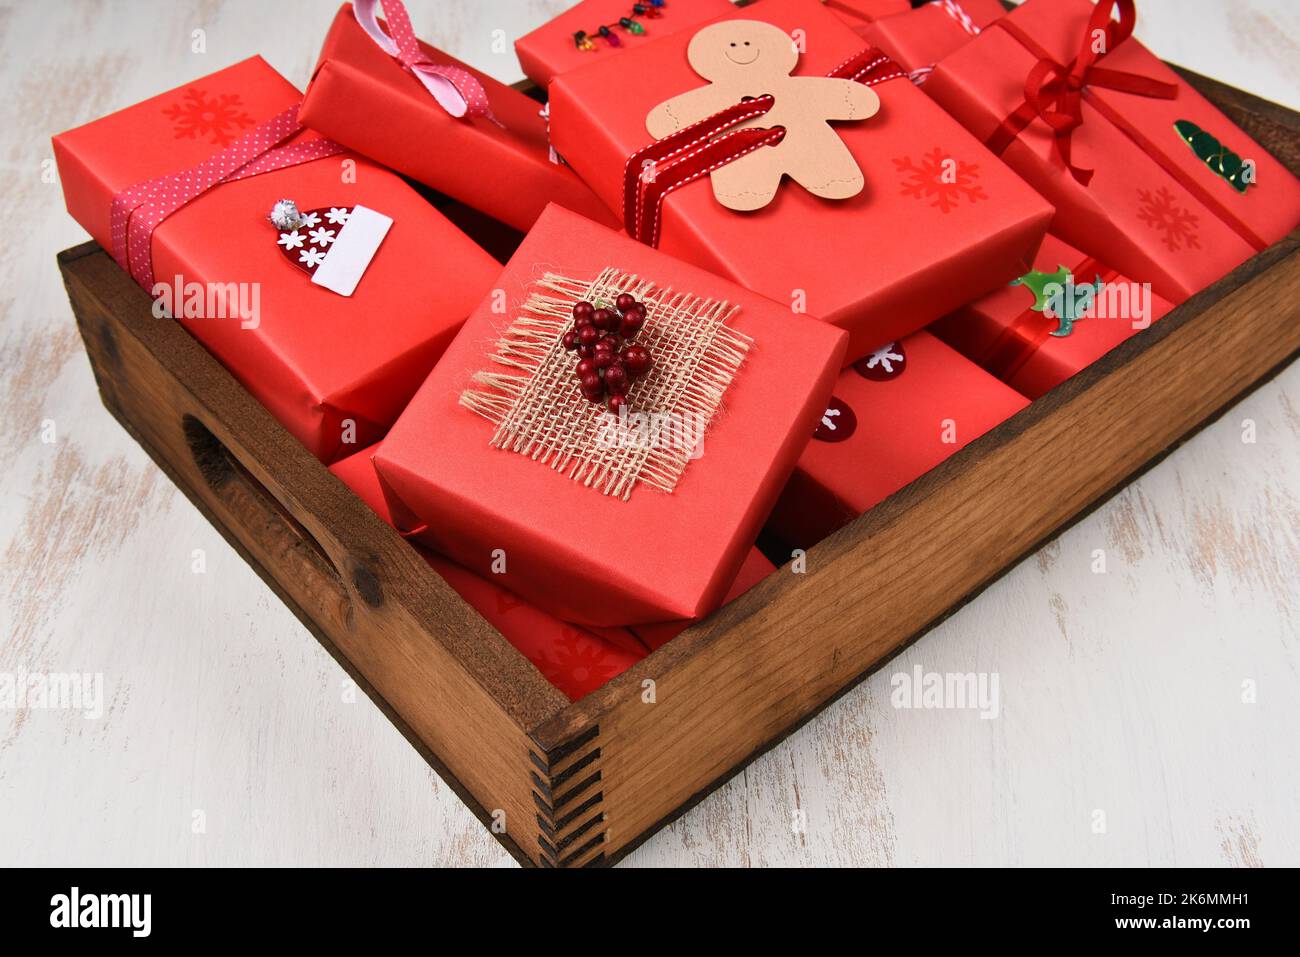 Cadeaux de Noël. Gros plan de cadeaux emballés et décorés en papier rouge dans une boîte en bois sombre. Banque D'Images